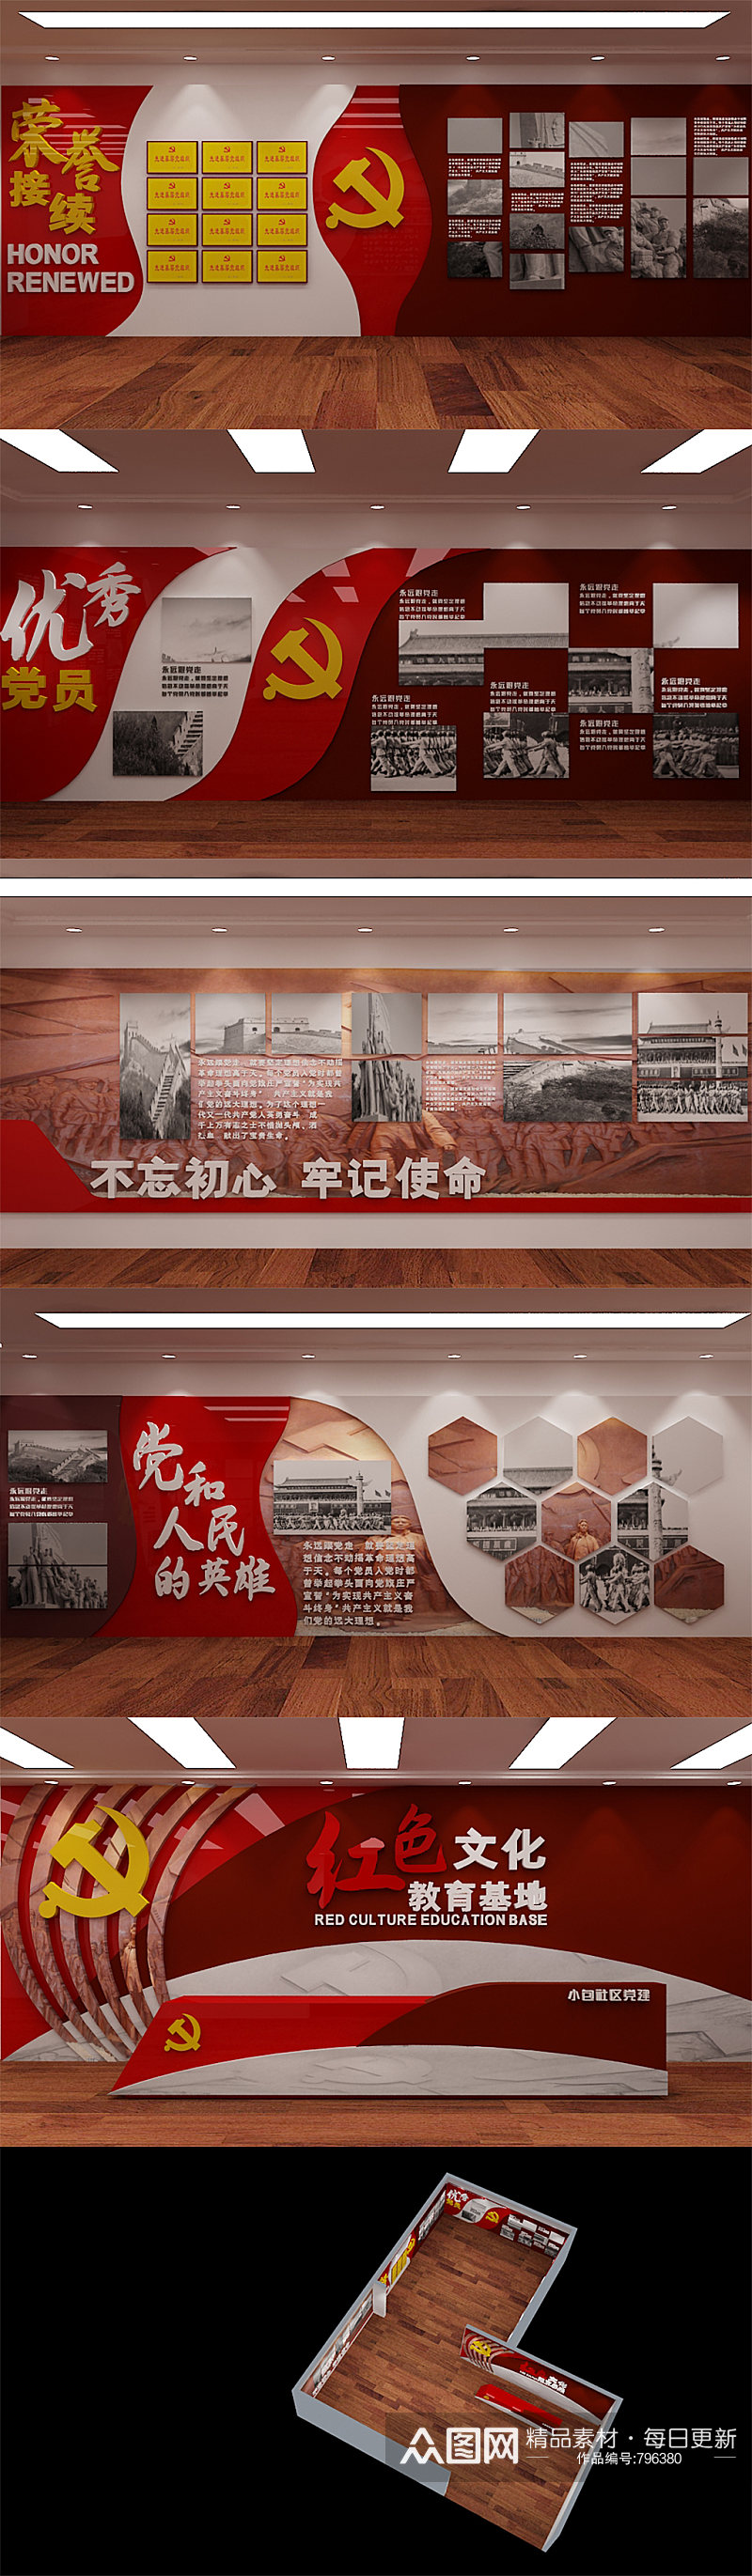 红色文化教育基地社区党建学习室文化墙素材